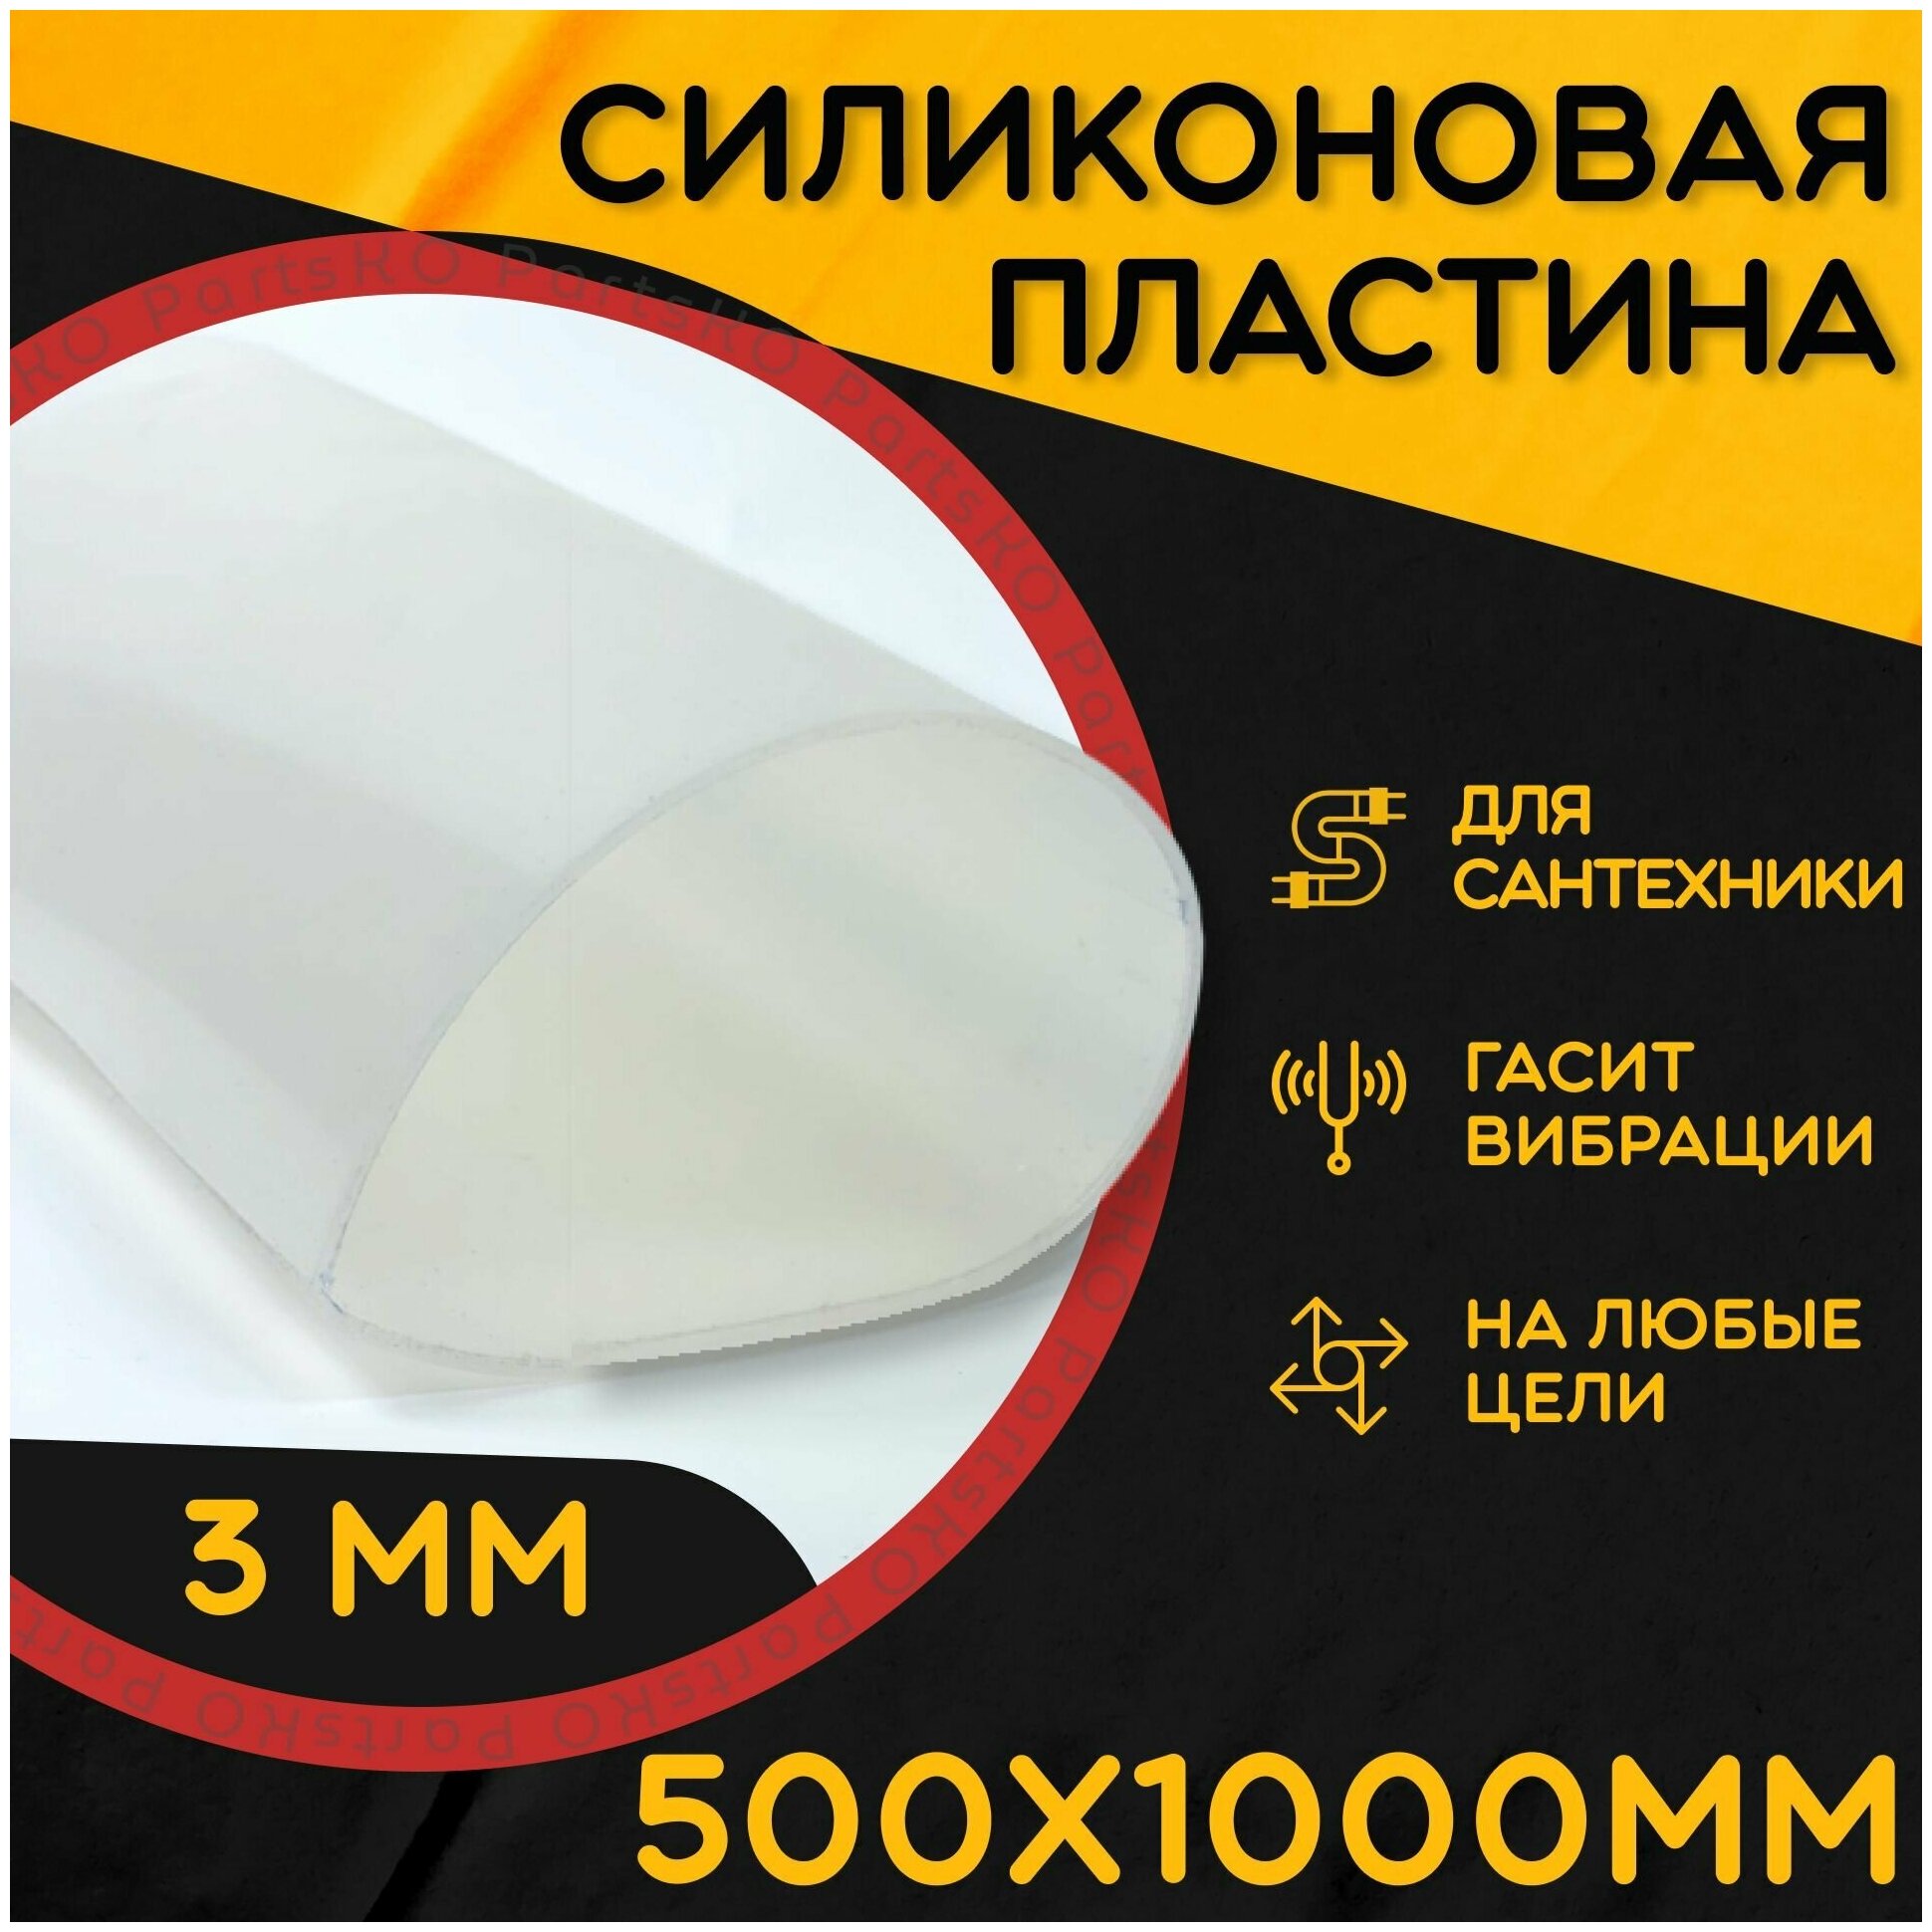 Силиконовая резина термостойкая. Толщина 3 мм. Размер 500х1000 мм / Уплотнительная прокладка / Силиконовая пластина белого цвета.